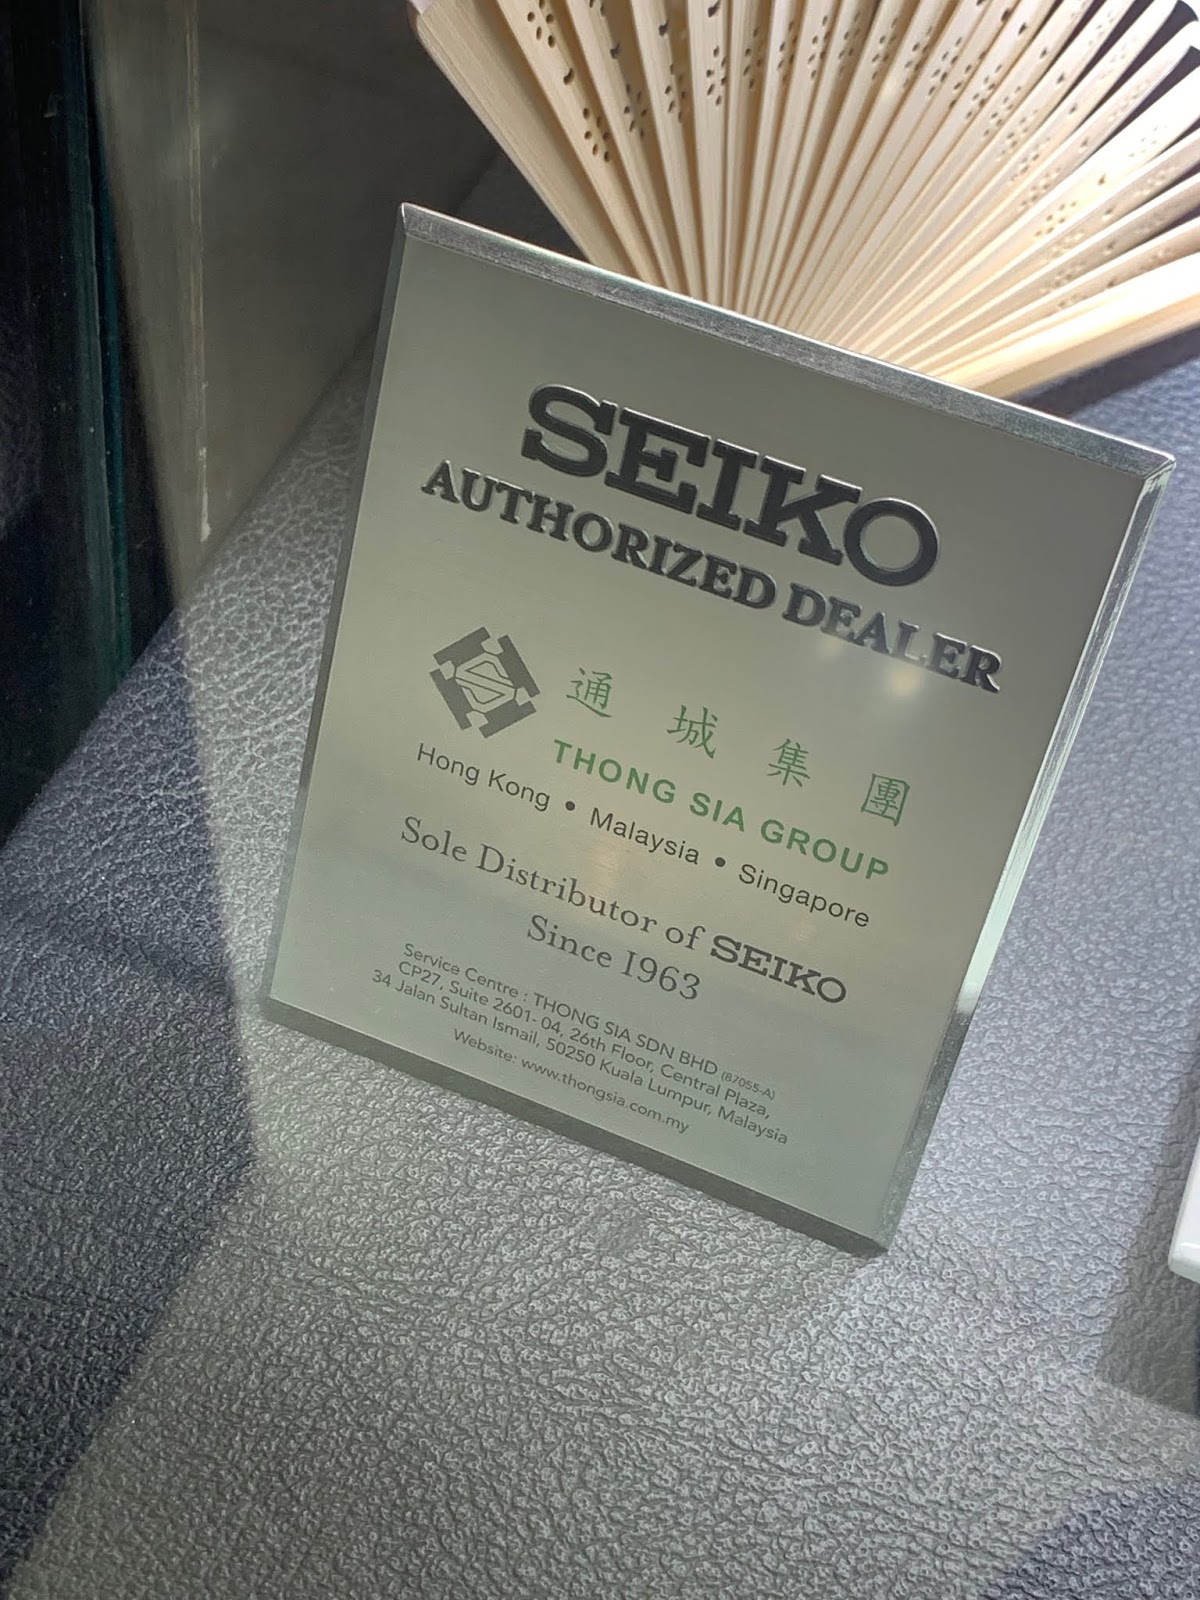 Seiko Authorized Dealer